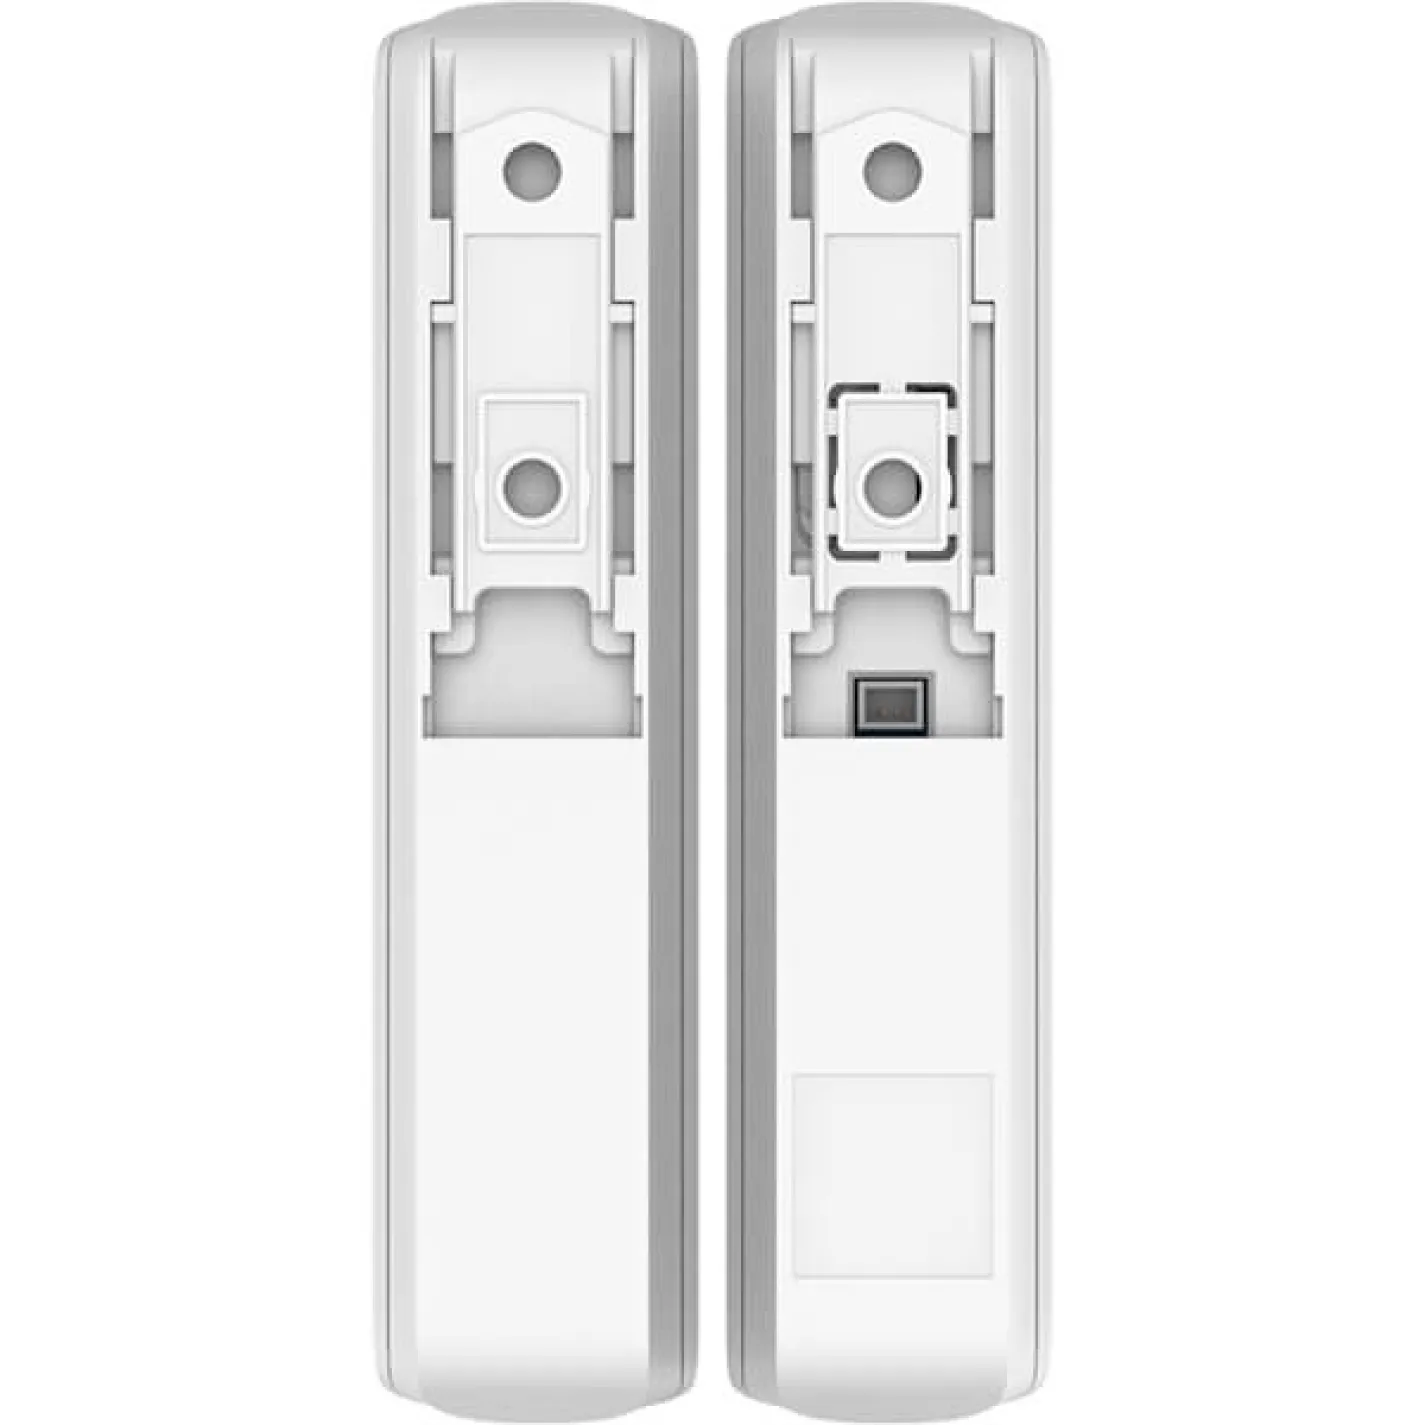 Беспроводной датчик открытия двери/окна Ajax DoorProtect, Jeweller, 3V CR123A, белый - Фото 1